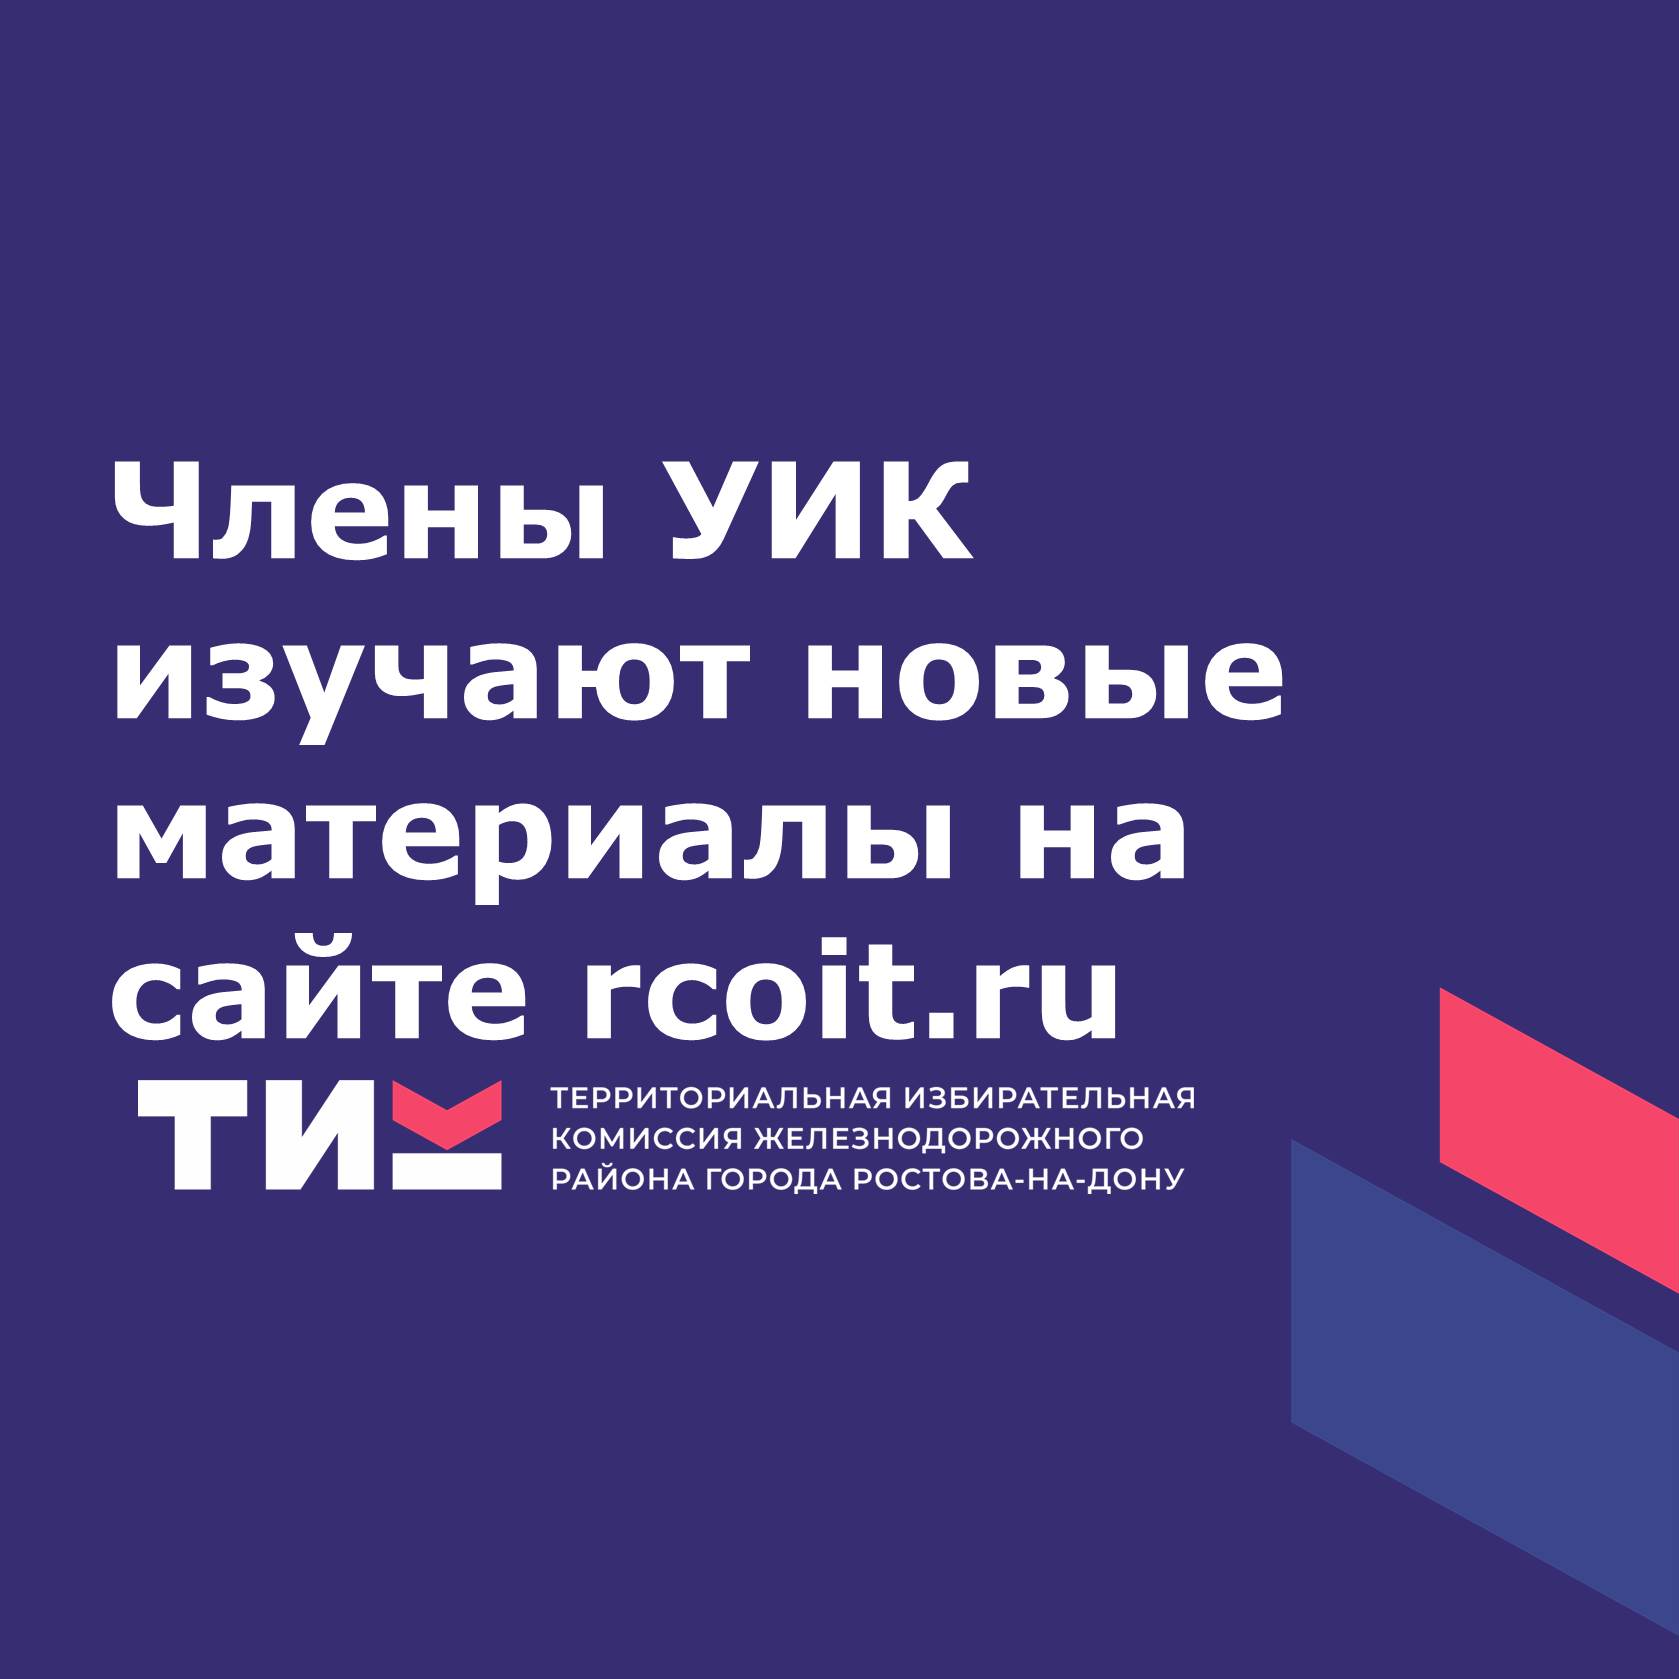 Члены УИК изучают новые материалы на сайте rcoit.ru